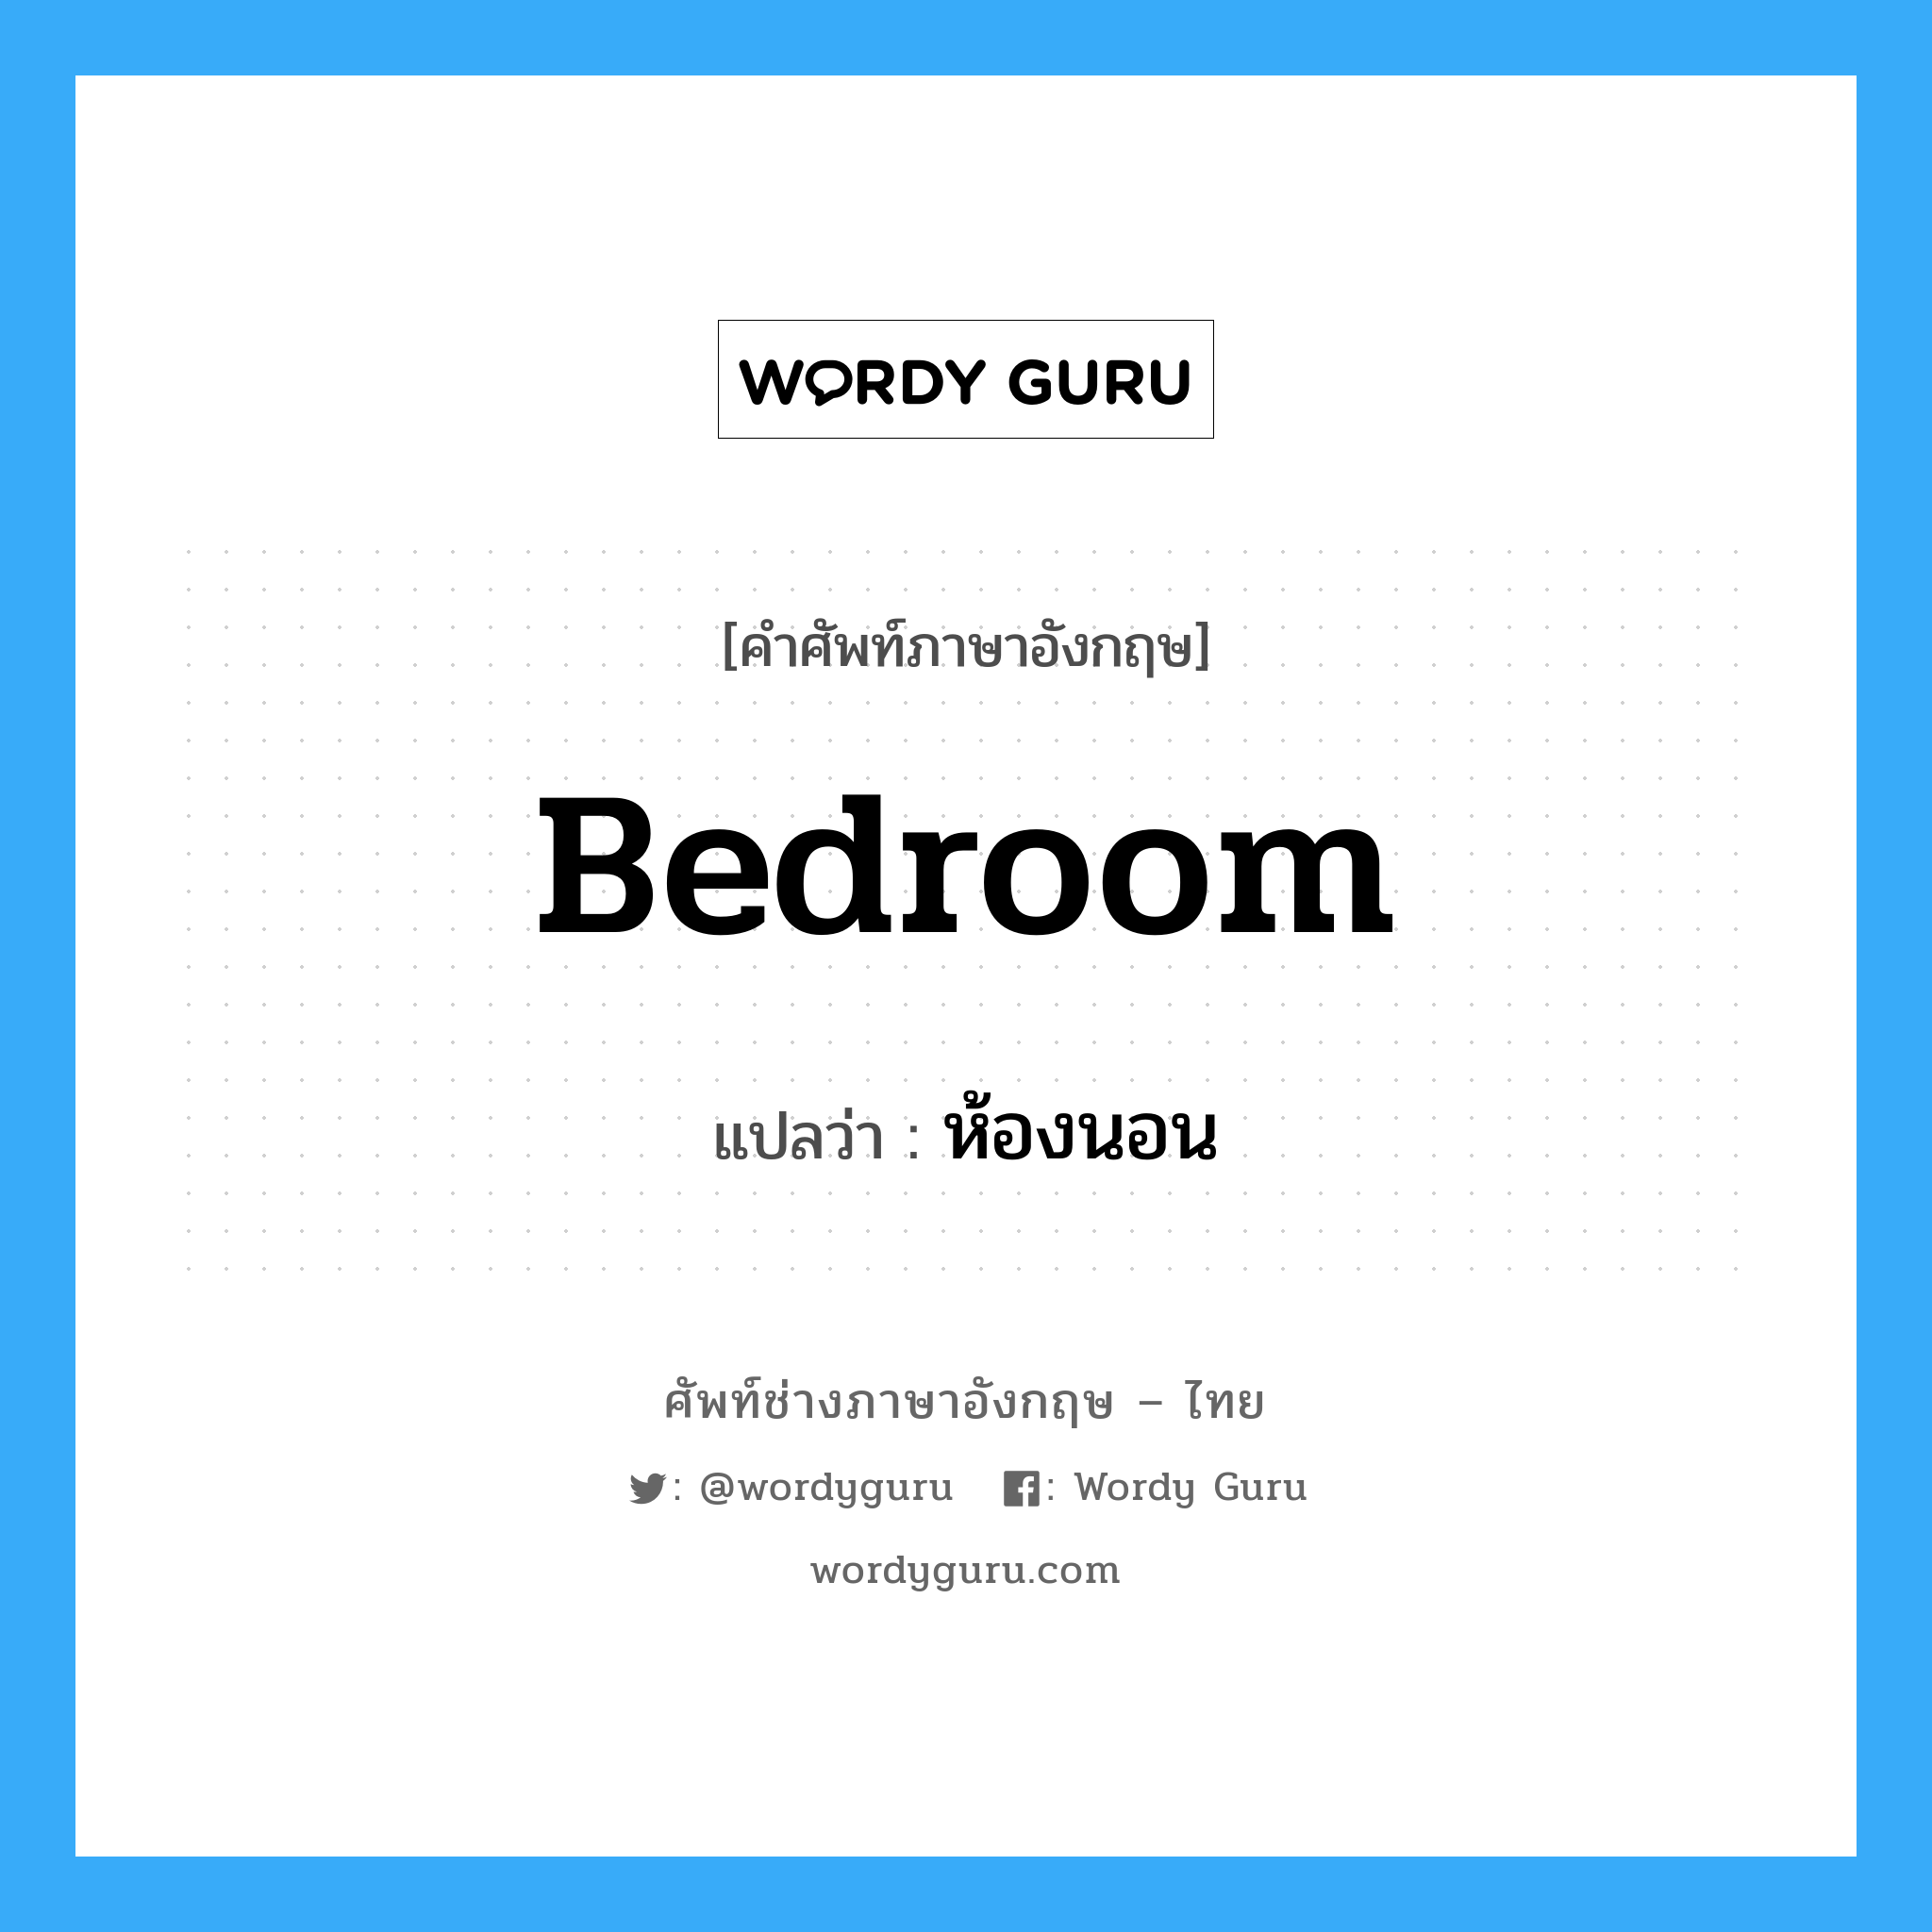 ห้องนอน ภาษาอังกฤษ?, คำศัพท์ช่างภาษาอังกฤษ - ไทย ห้องนอน คำศัพท์ภาษาอังกฤษ ห้องนอน แปลว่า bedroom